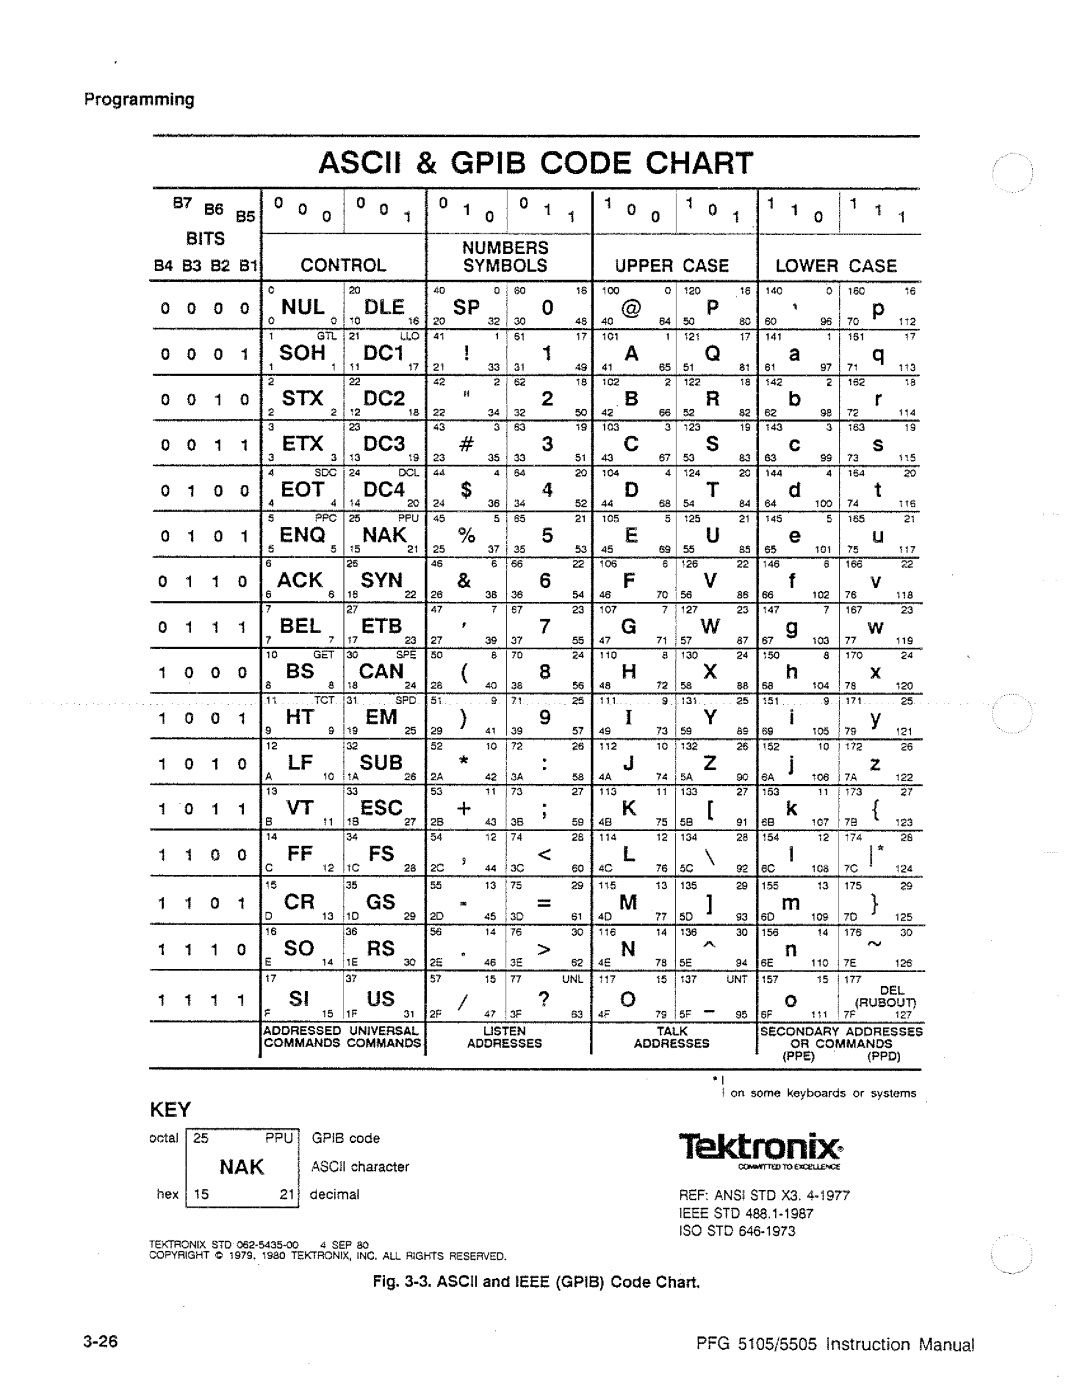 Tektronix PFG 5505, PFG 5105 manual 